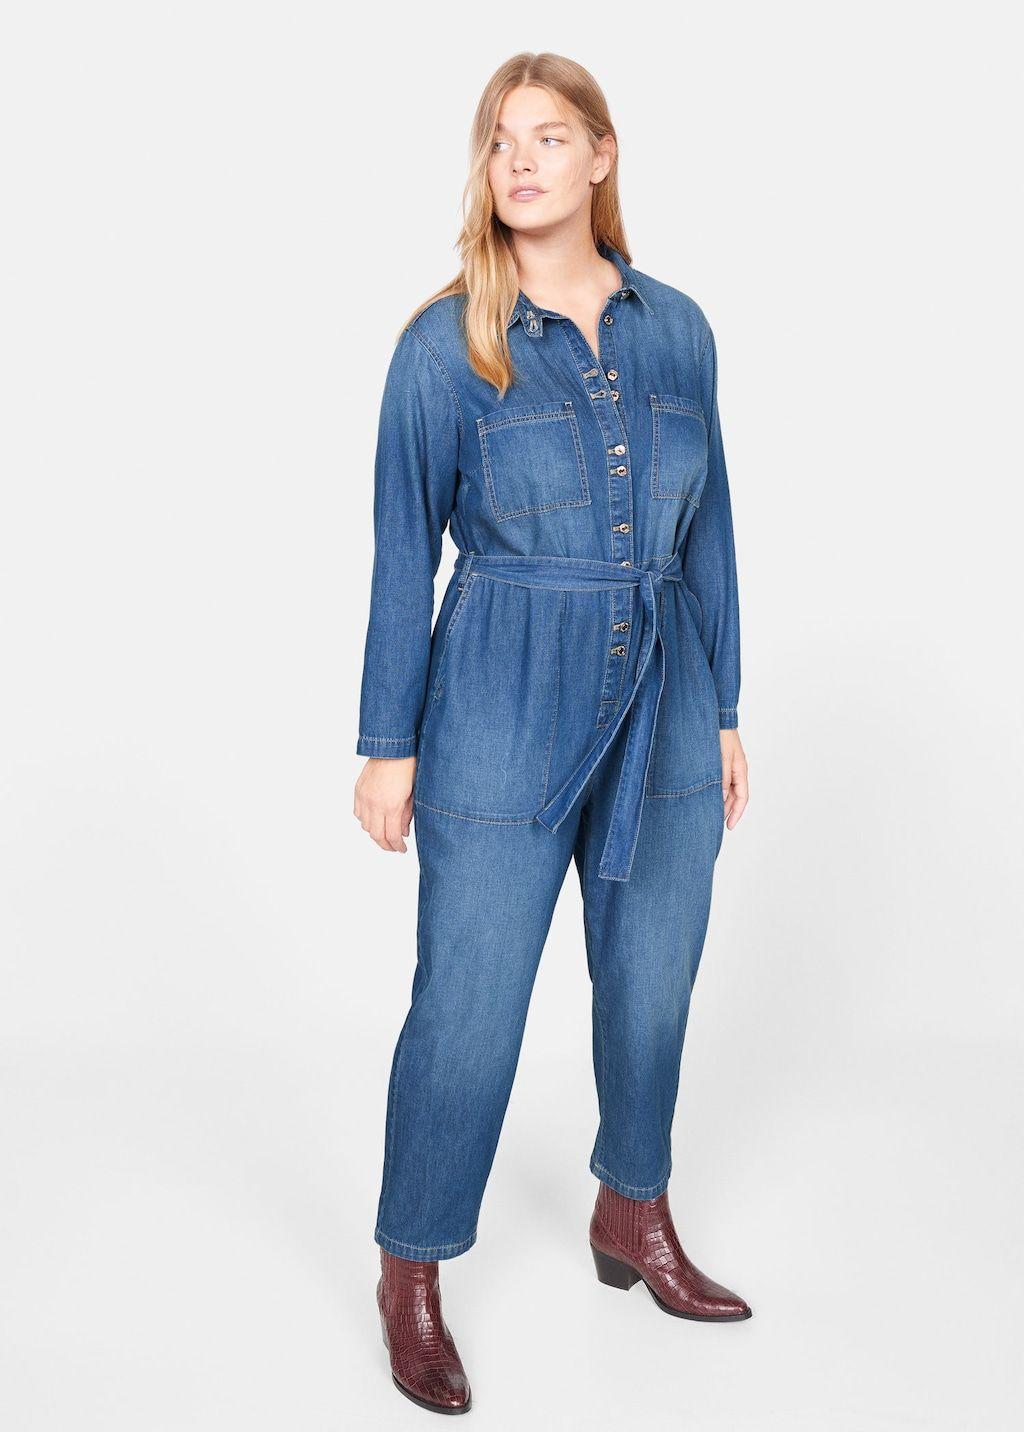 H&M sort la combinaison en jean parfaite à porter avec des bottines !